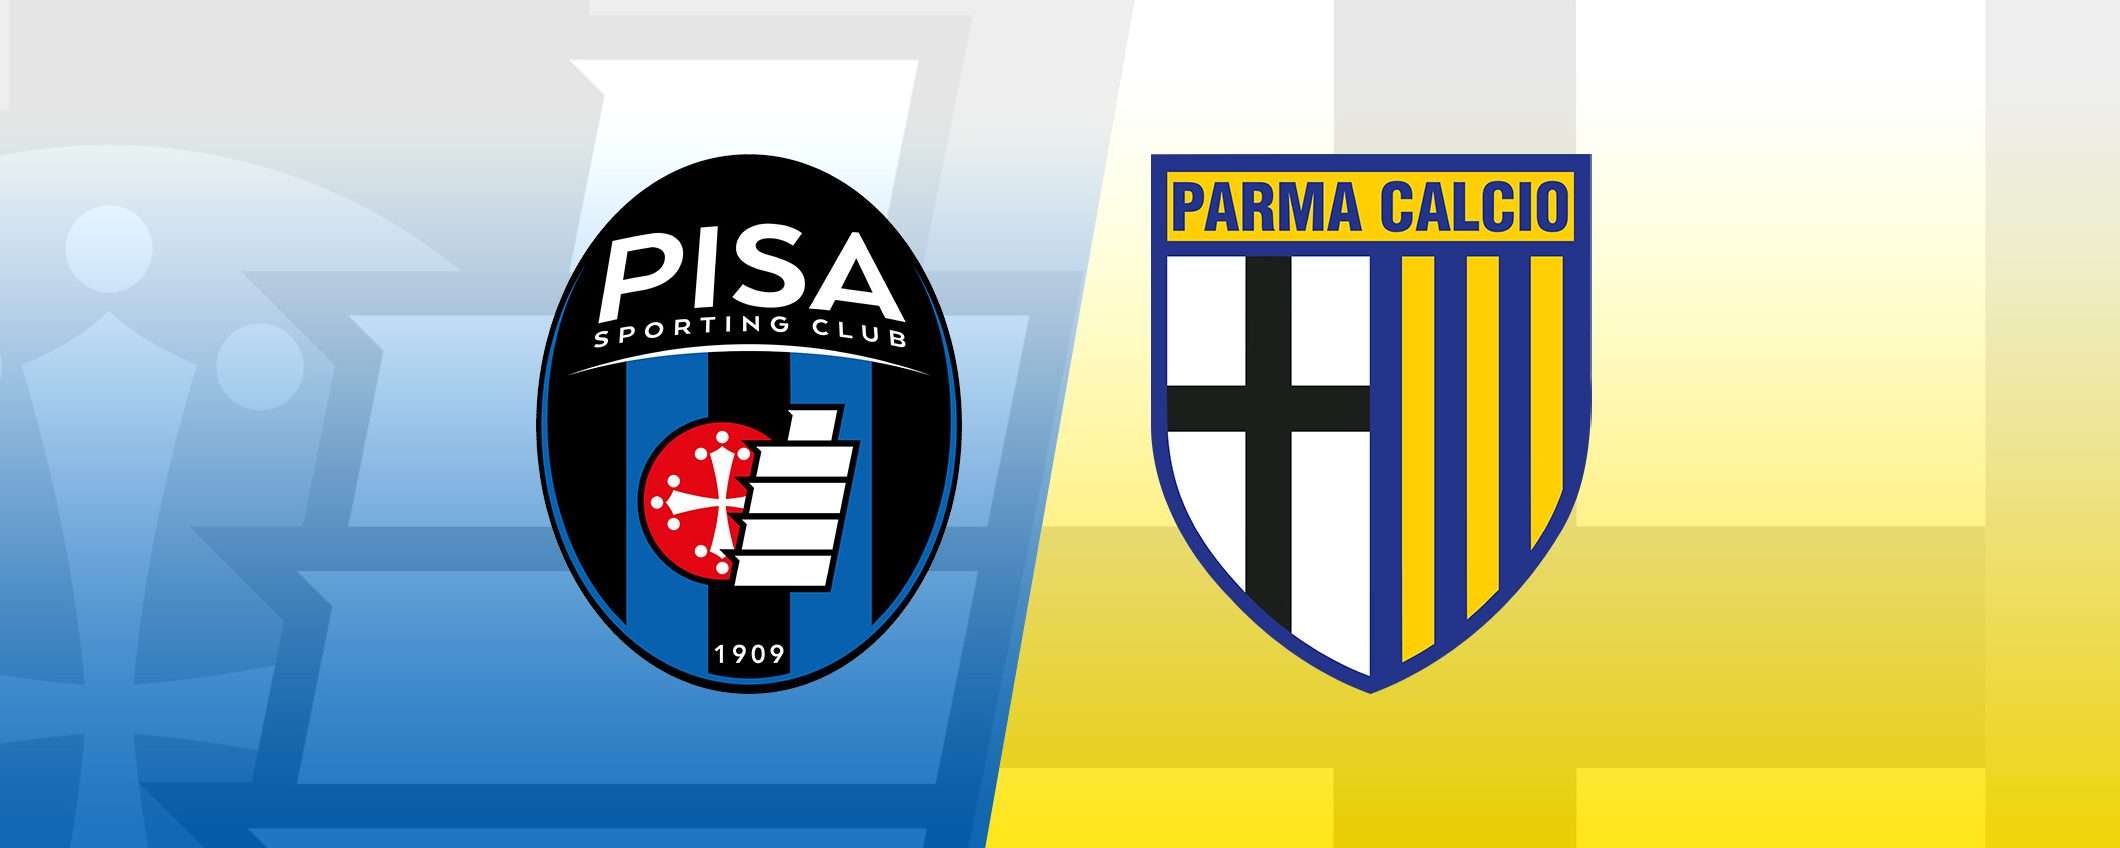 Come vedere Pisa-Parma in diretta streaming